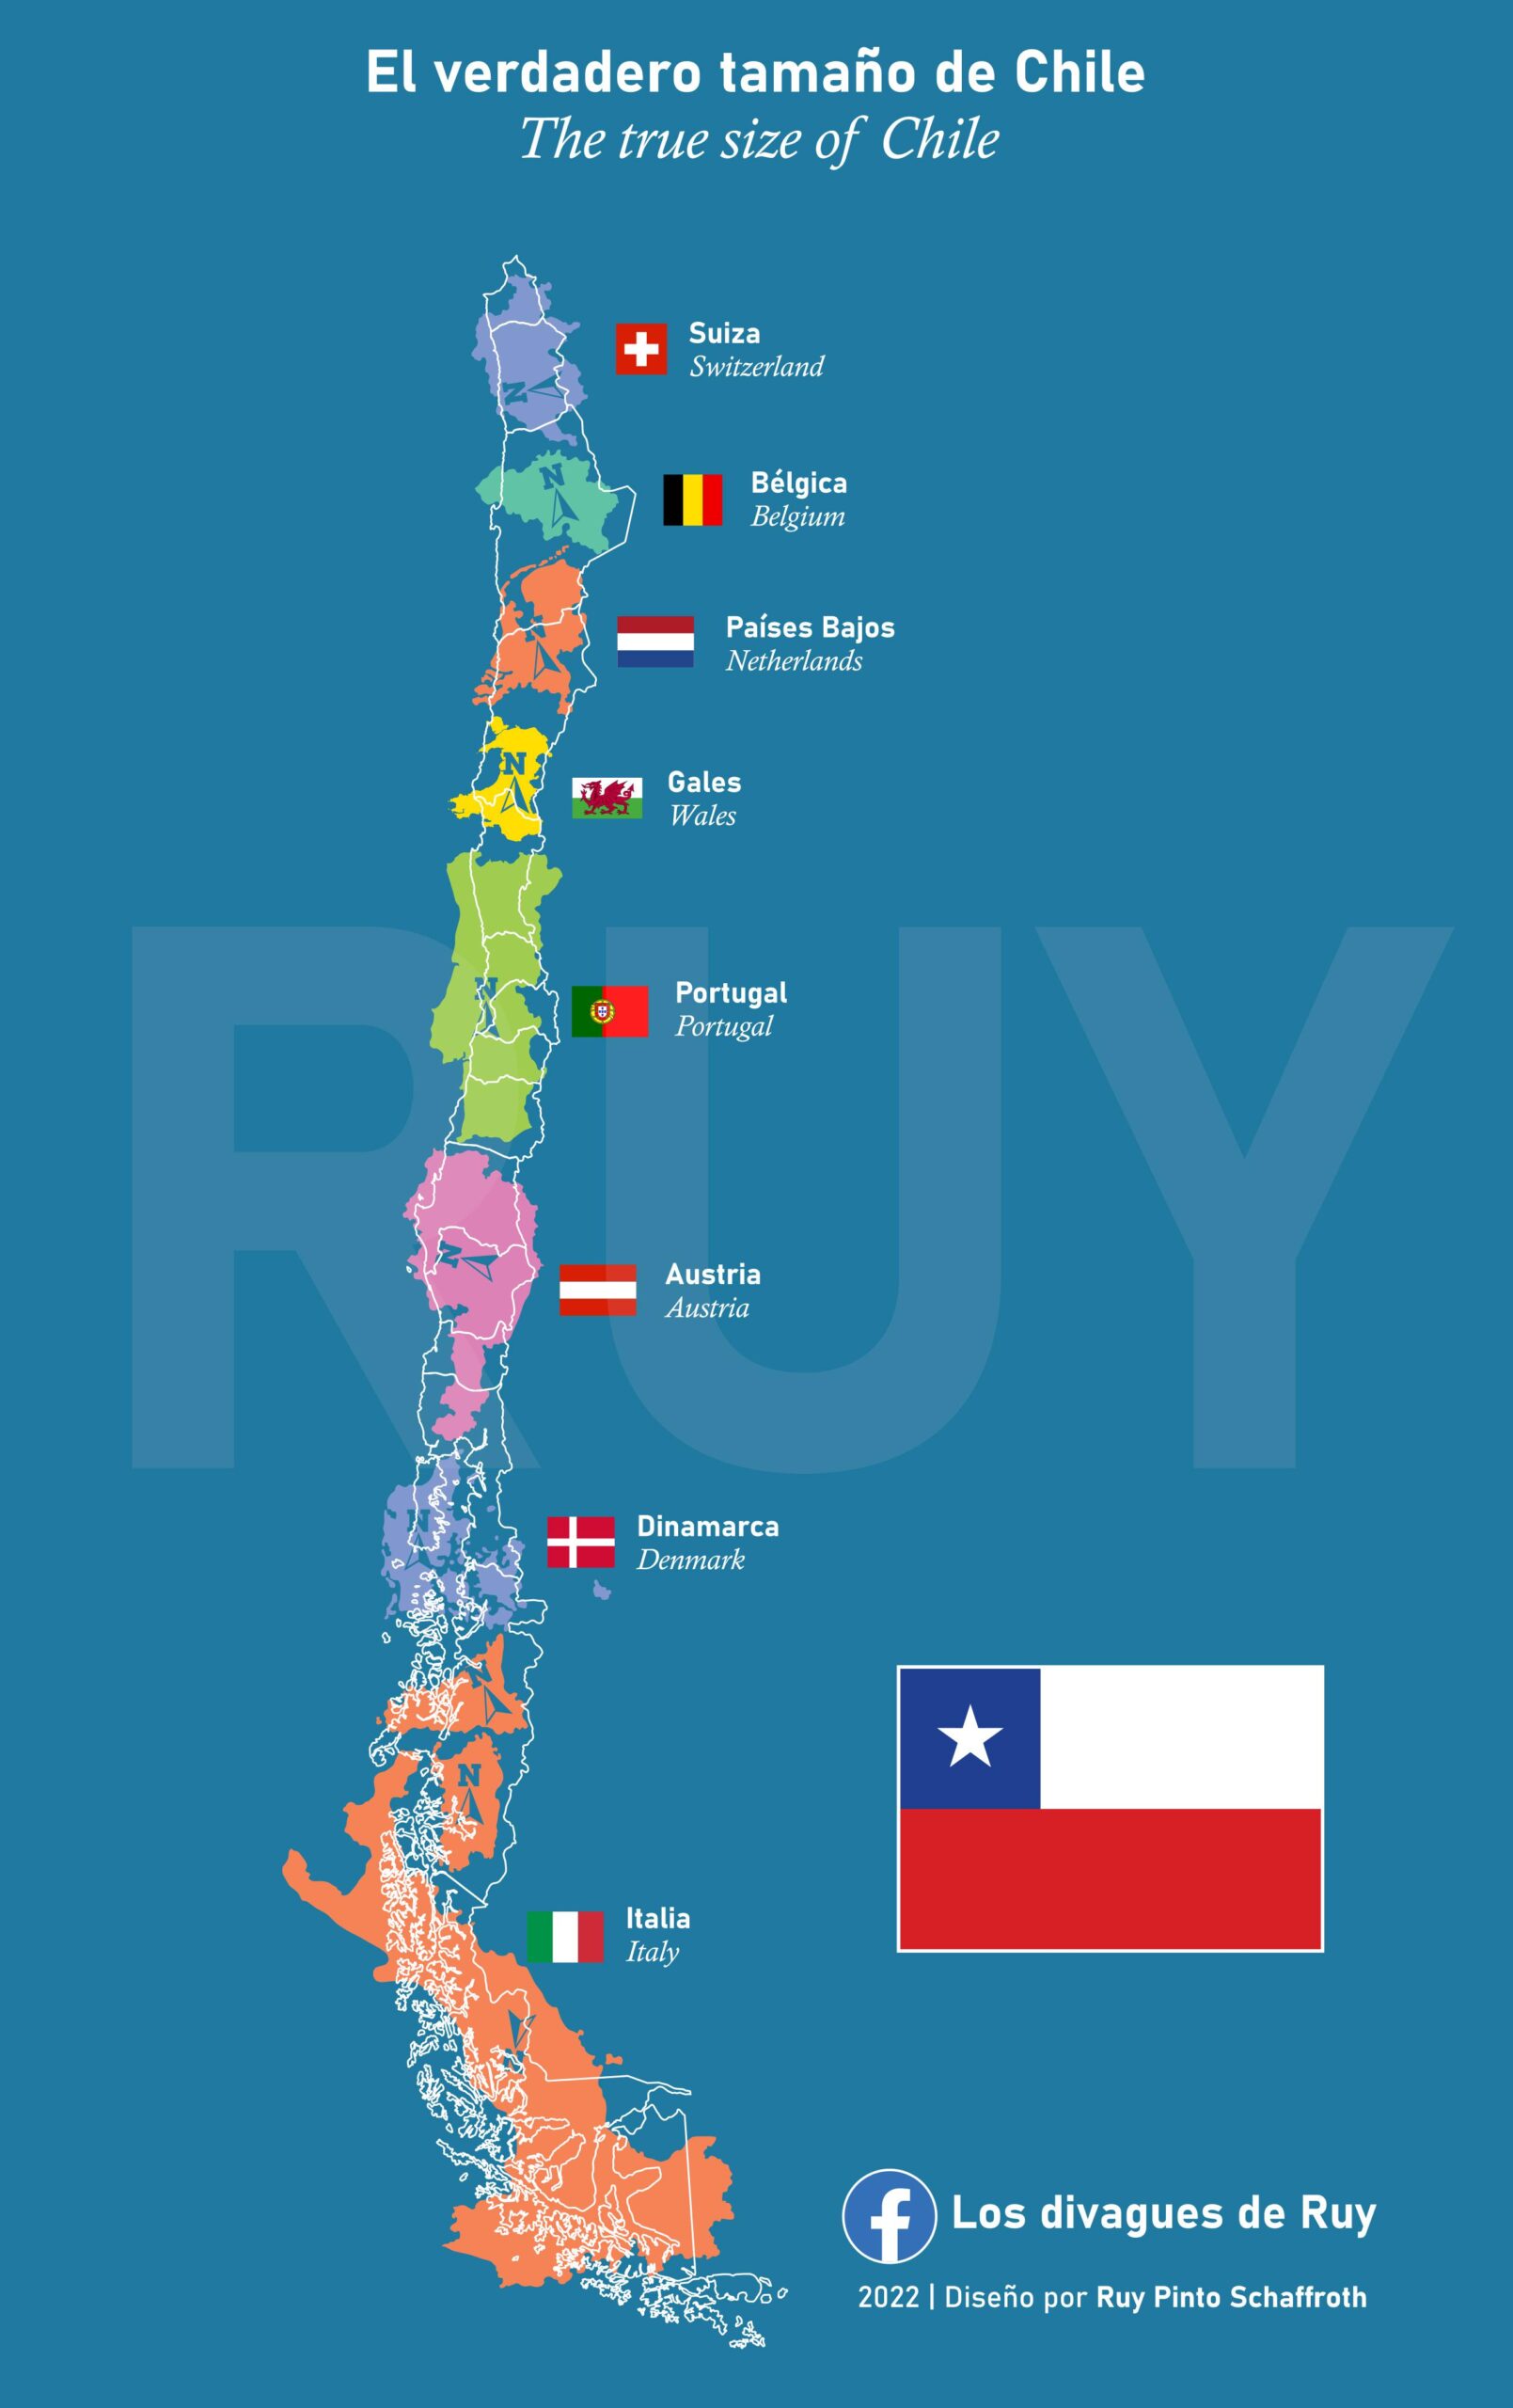 El verdadero tamaño de Chile (2022)